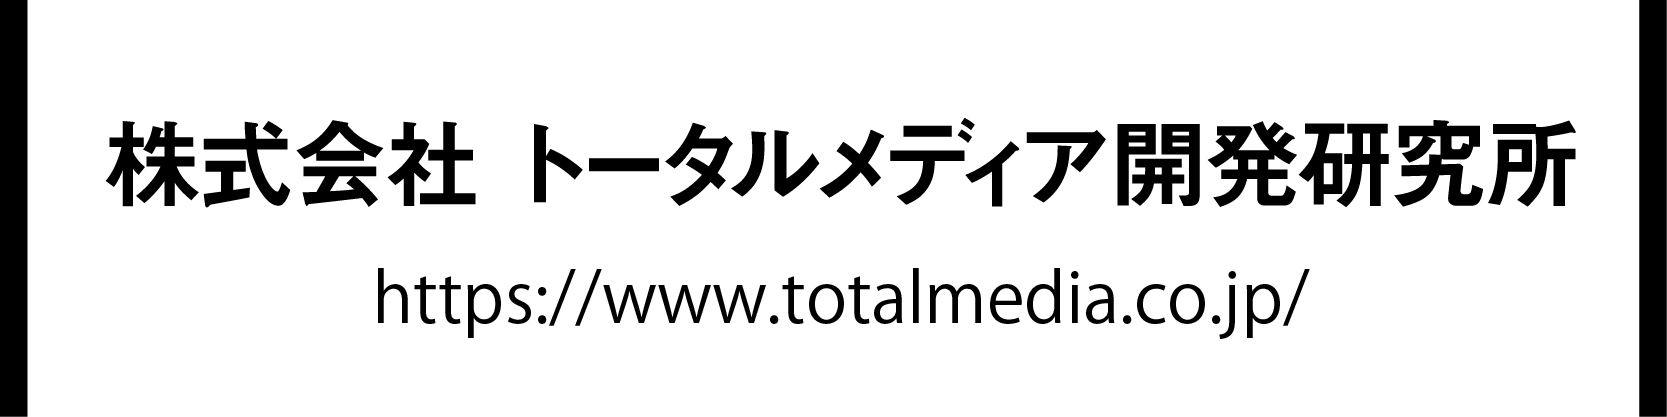 株式会社トータルメディア開発研究所